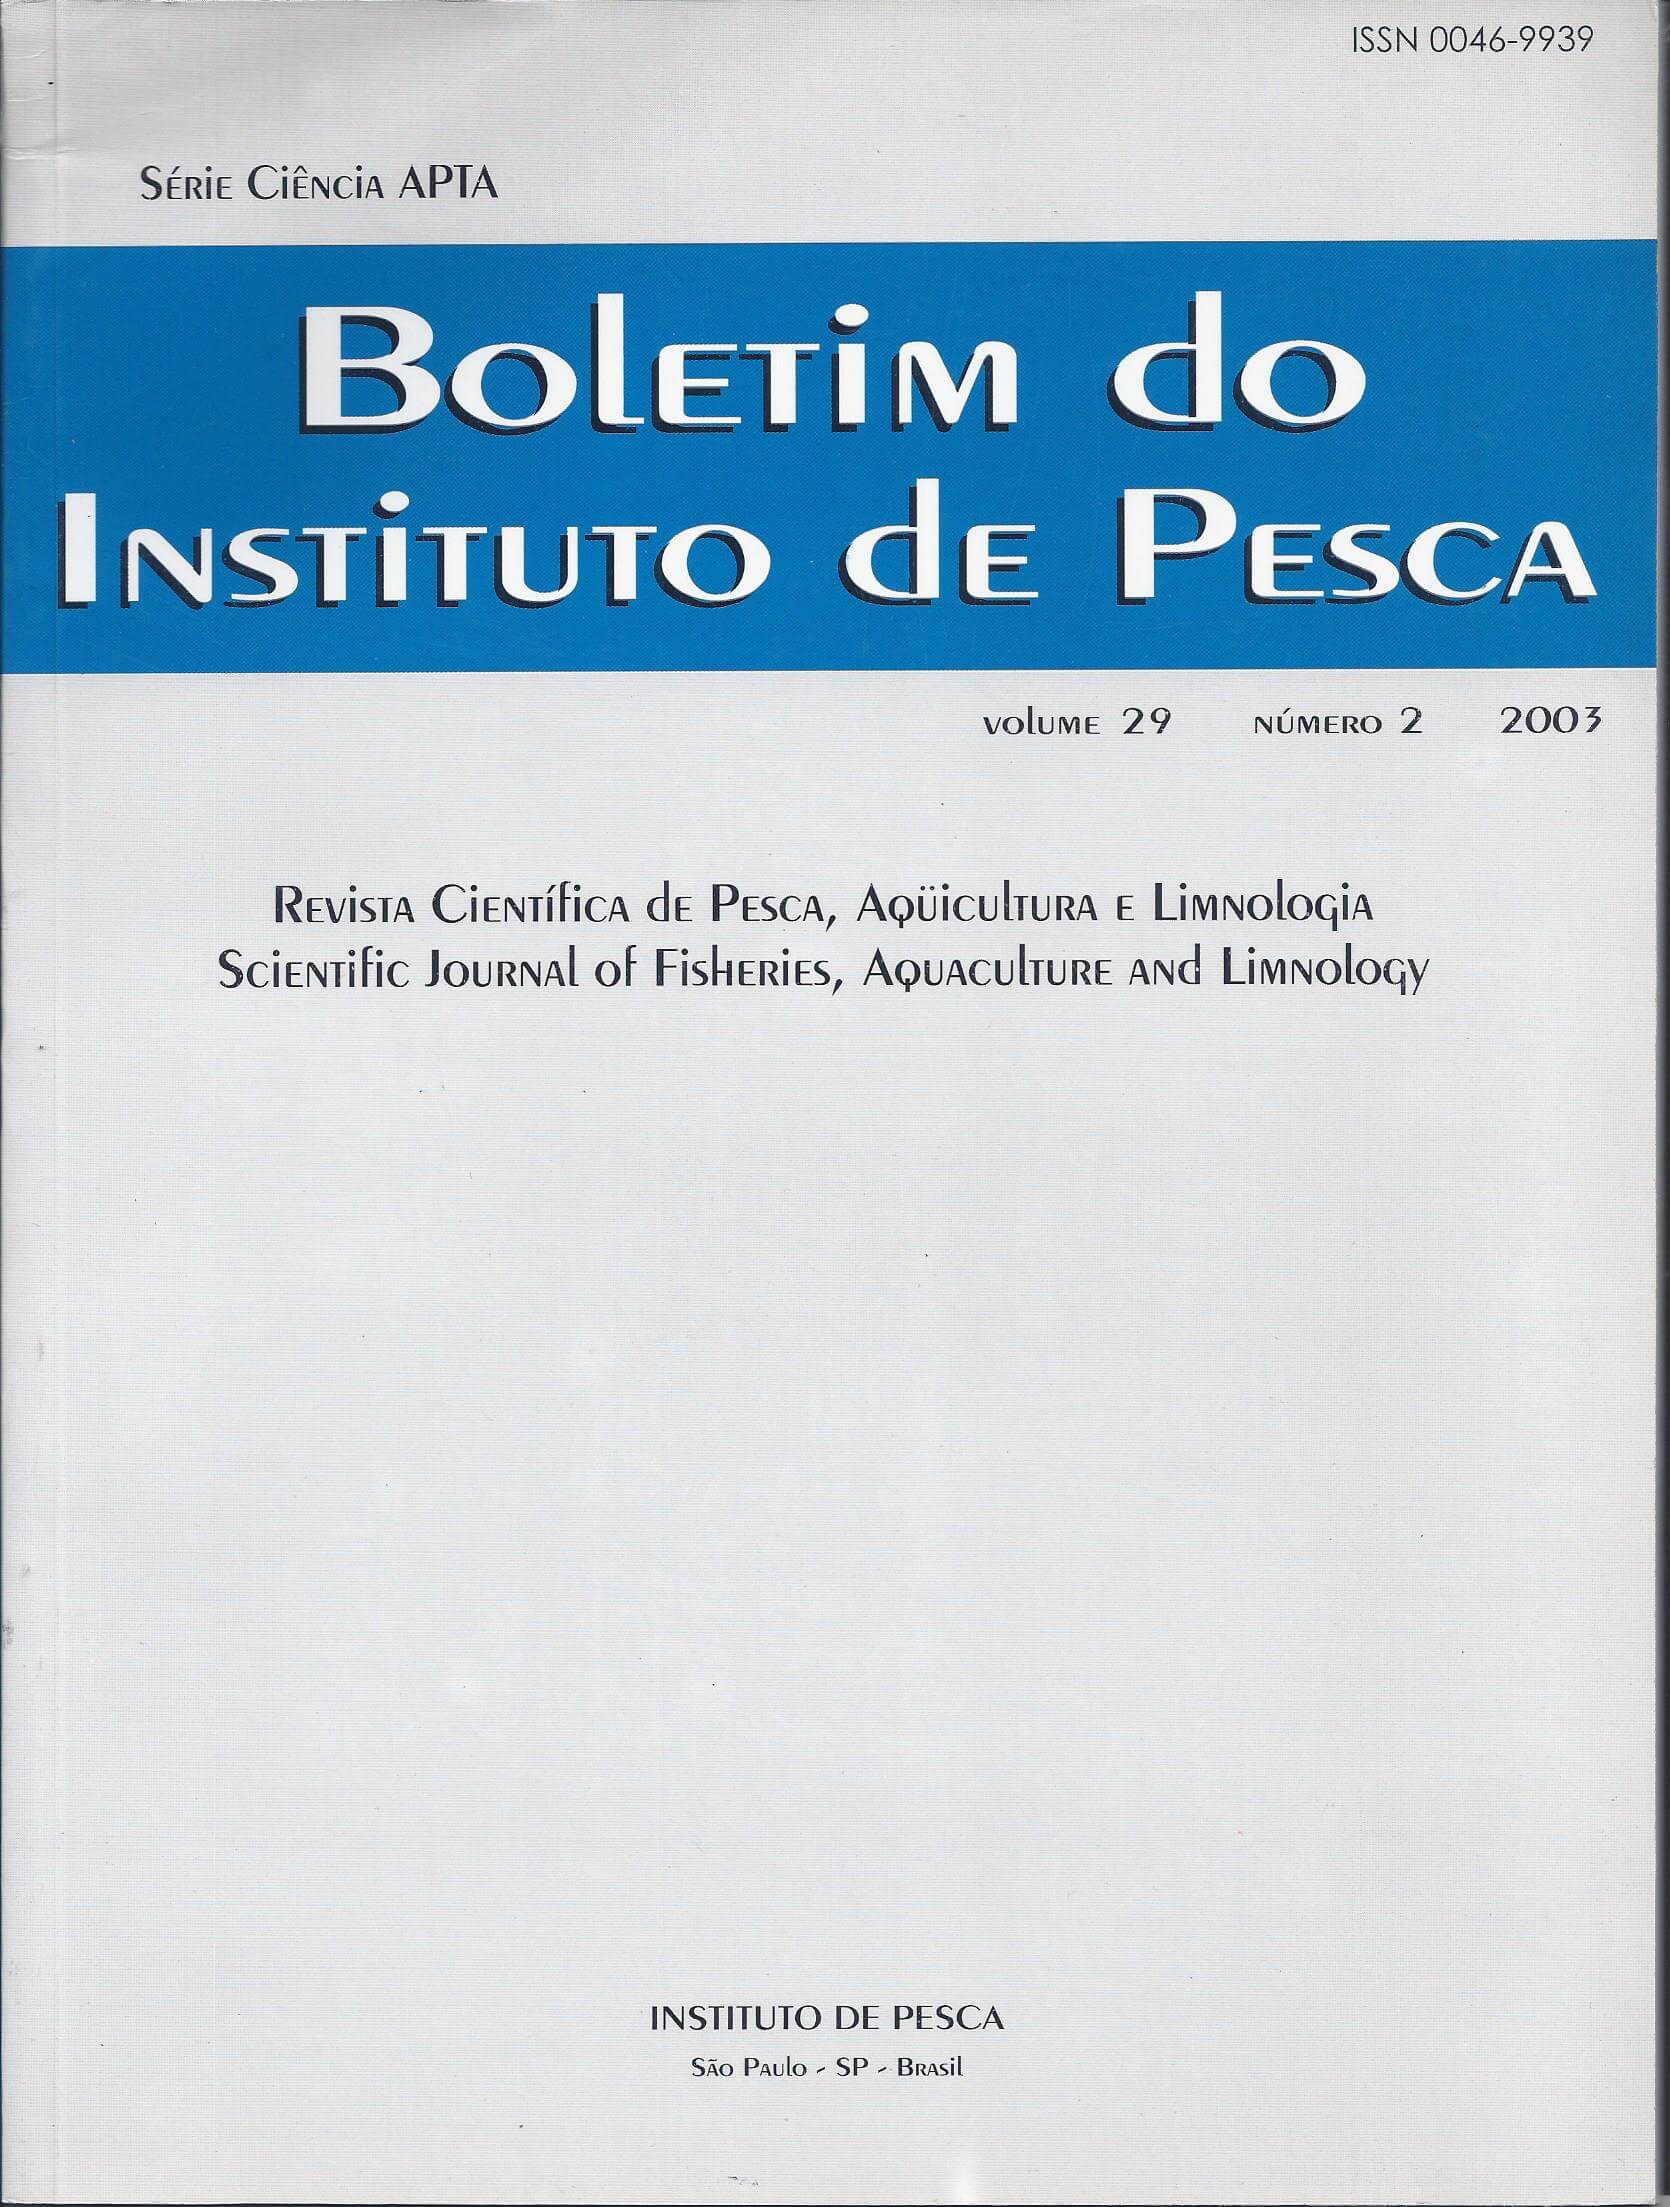 					View Vol. 29 No. 2 (2003): BOLETIM DO INSTITUTO DE PESCA
				